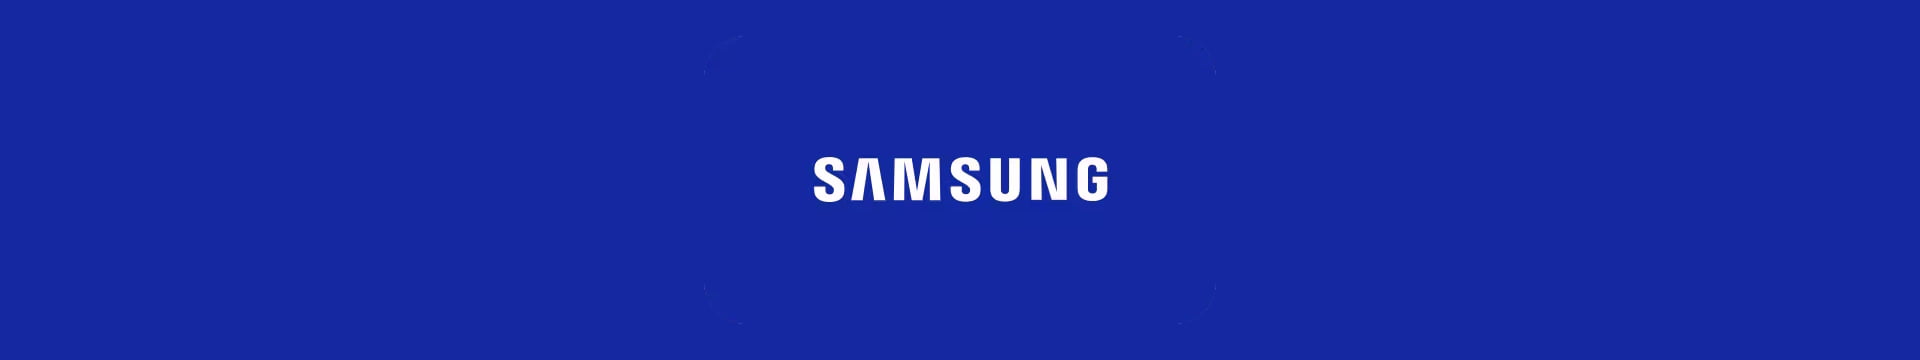 מכשירי Samsung